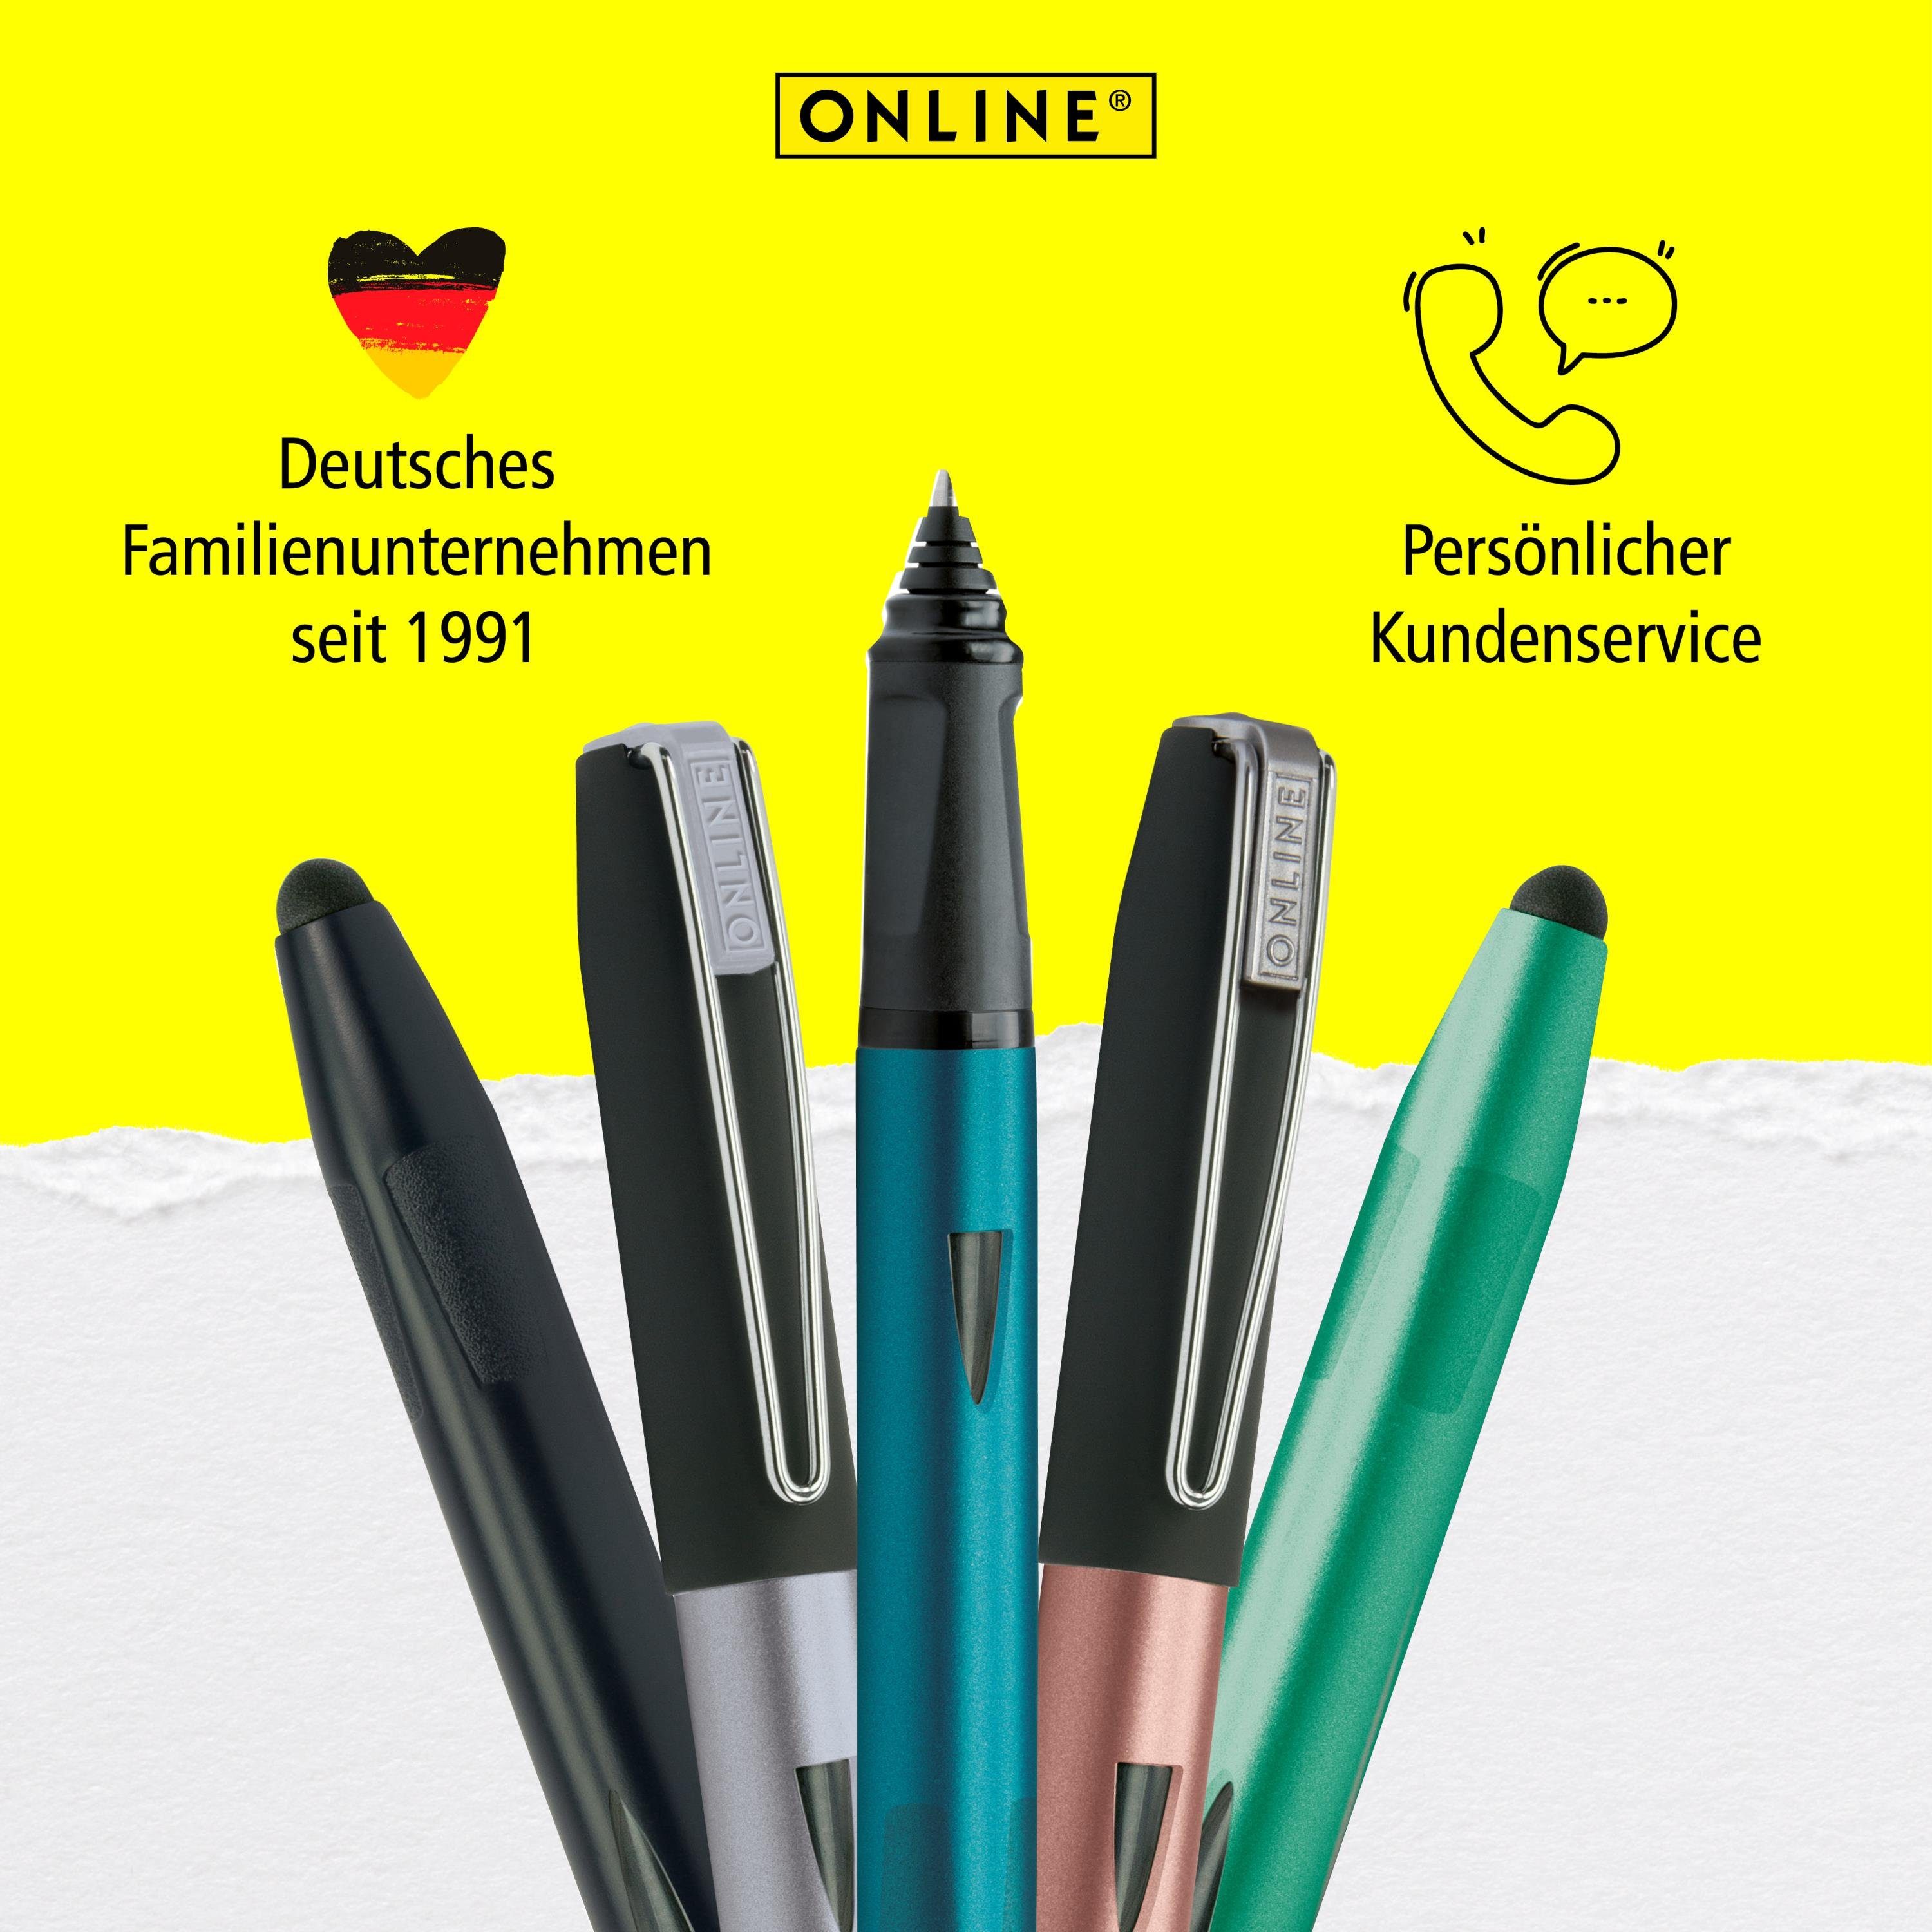 ideal die ergonomisch, Pen Online Rosegold Schule, Stylus-Tip mit Plus, Tintenroller Switch für